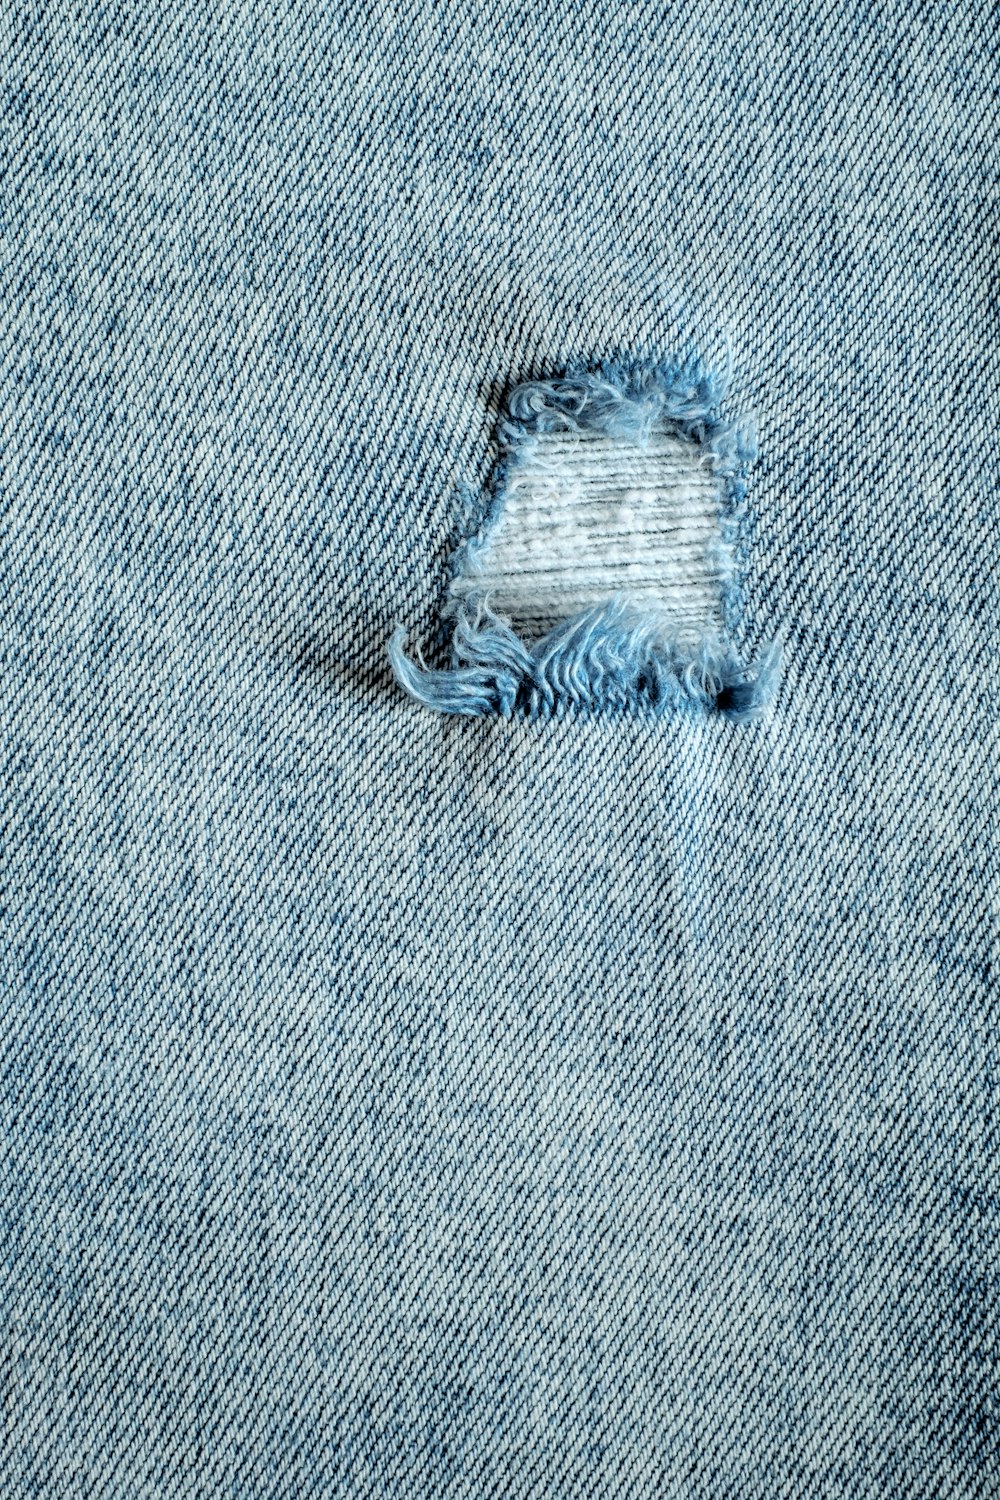 Un agujero en la parte trasera de un par de jeans